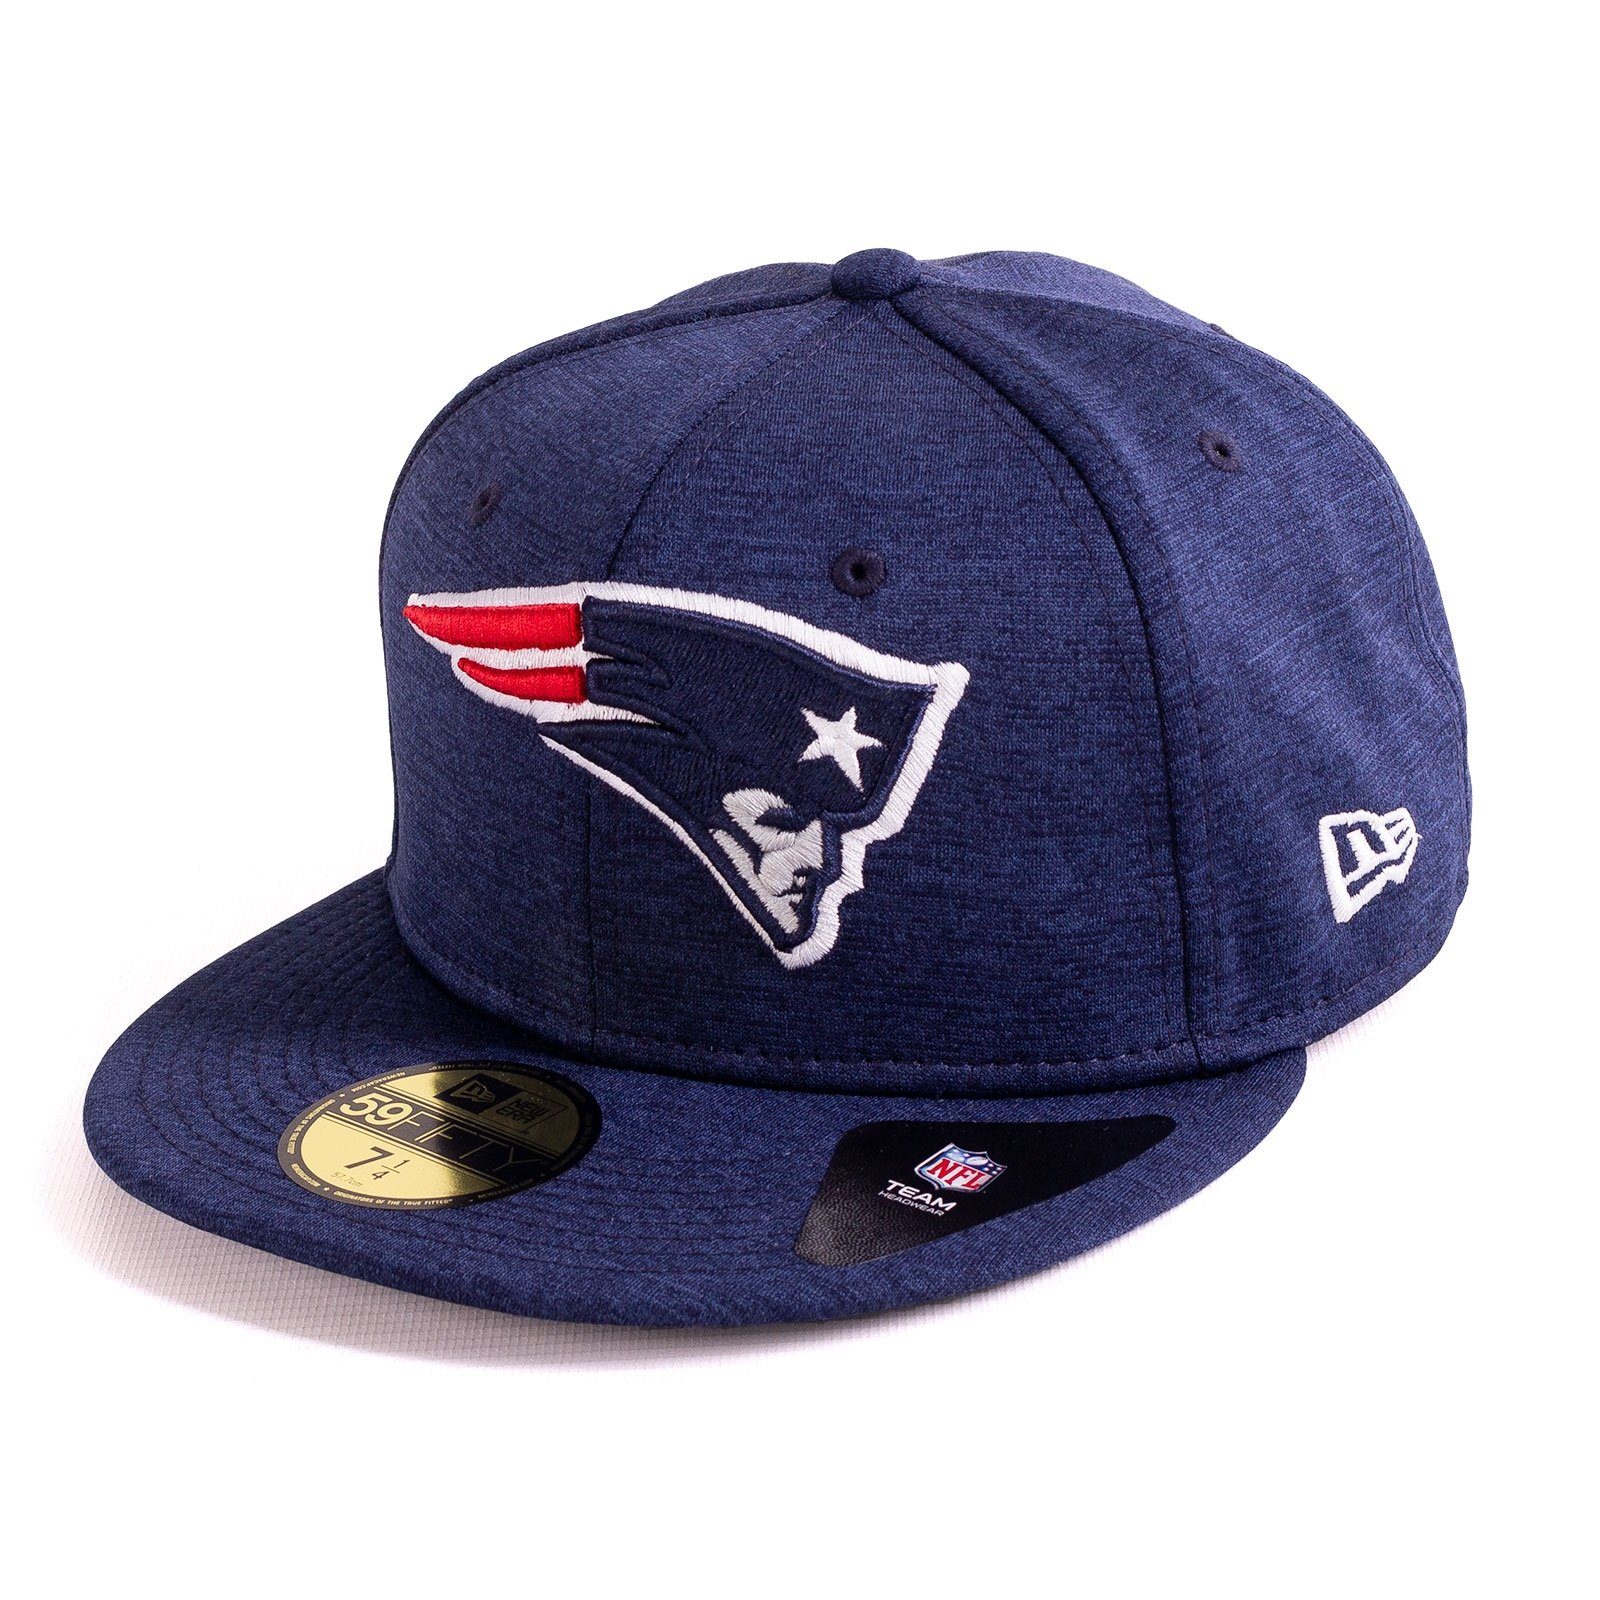 New Era Baseball Cap Cap New Era New England Patriots (1-St)